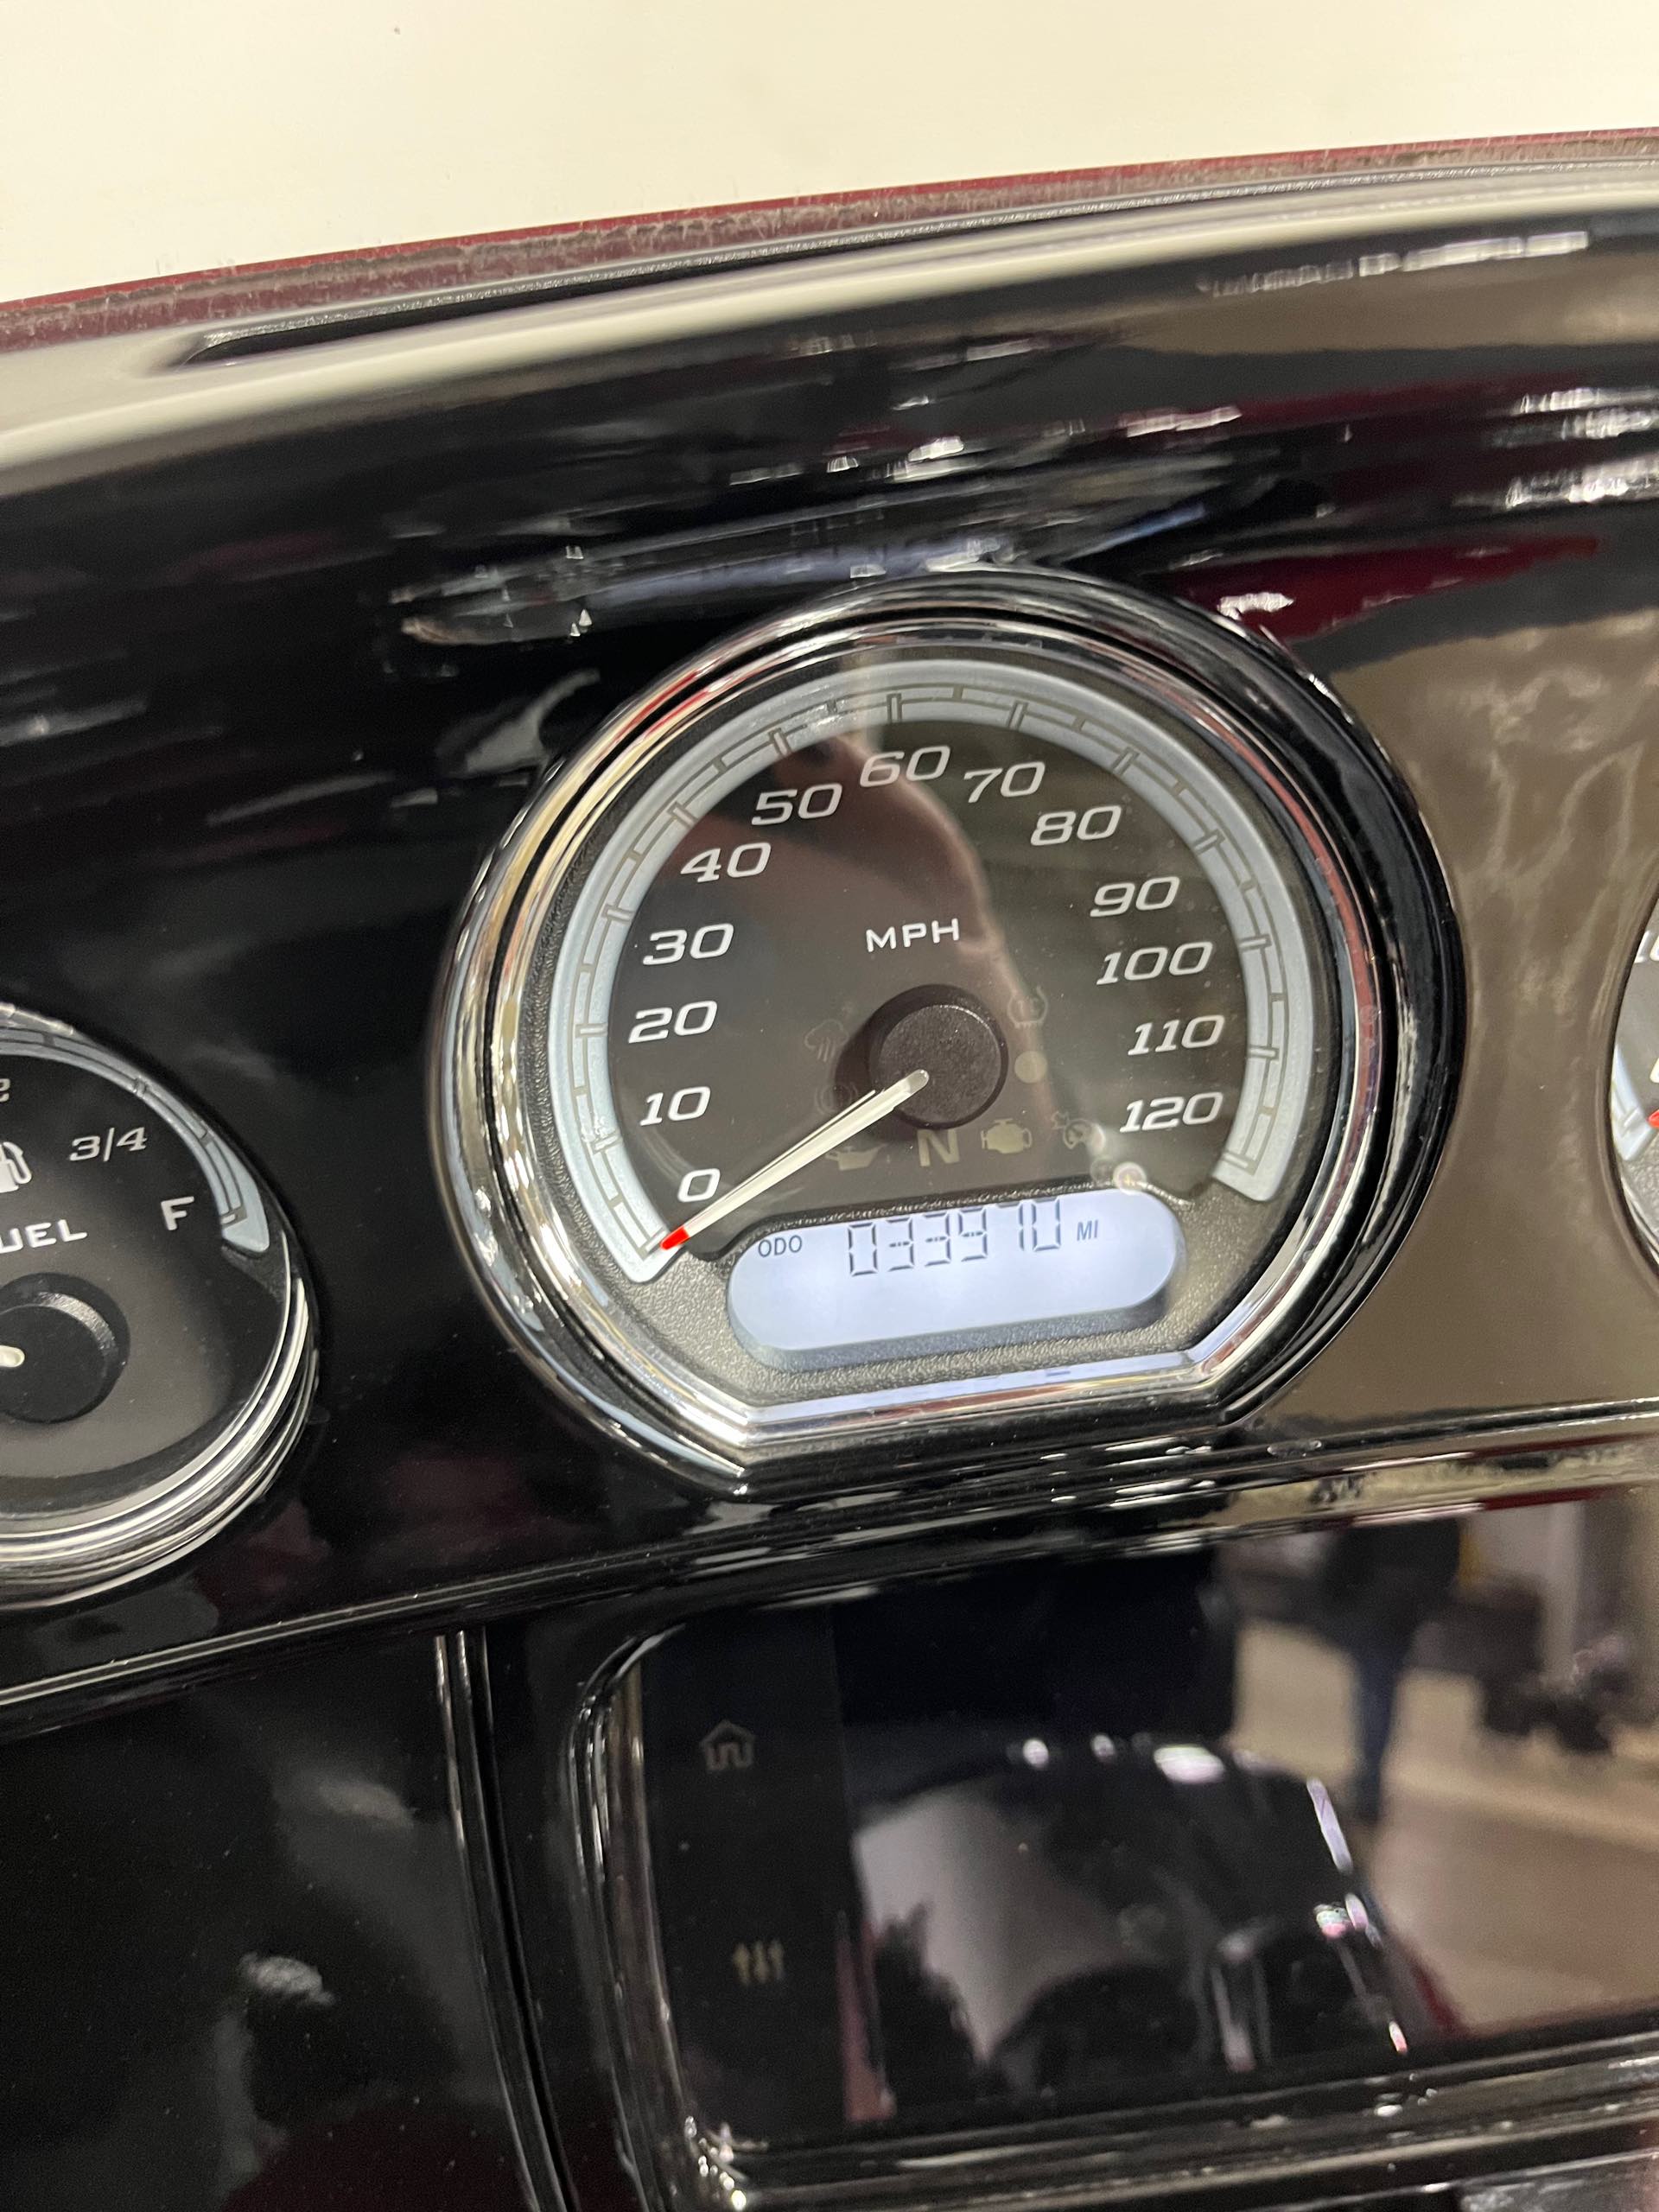 2020 Harley-Davidson Touring Ultra Limited at Cannonball Harley-Davidson